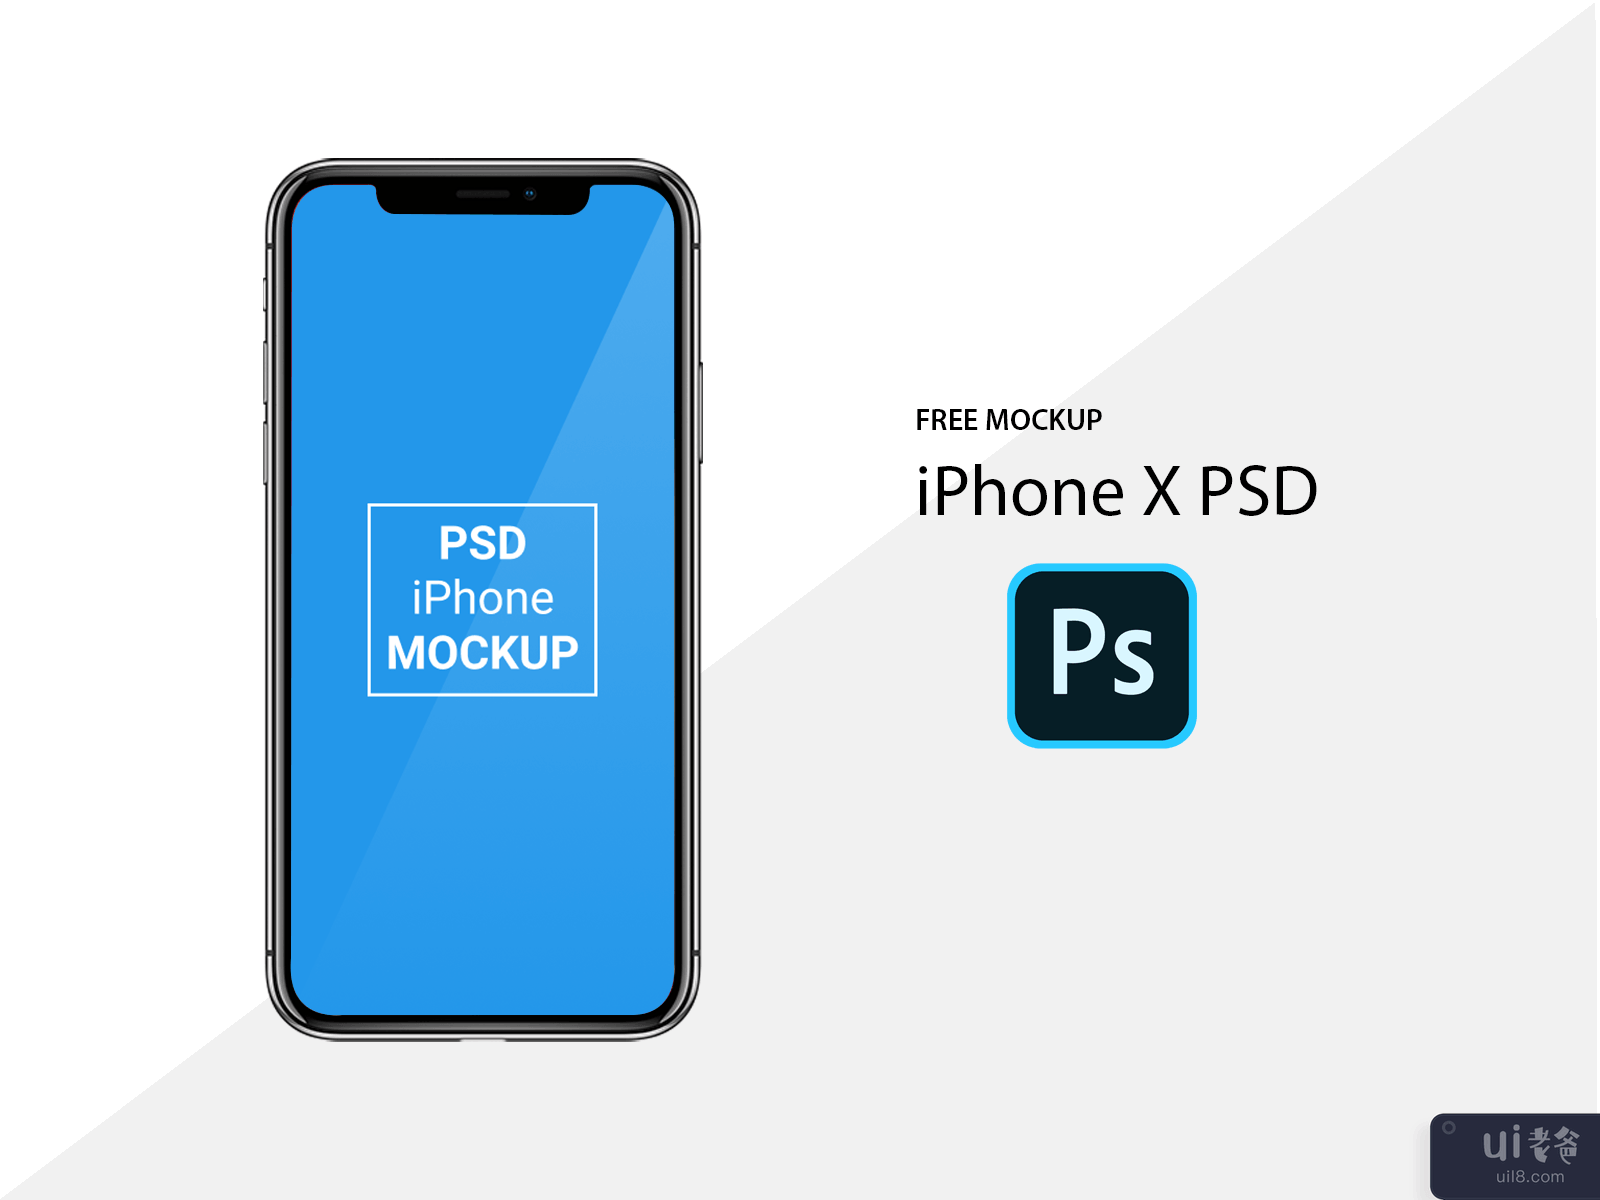 苹果 iPhone X 免费 PSD 模型(Apple iPhone X Free PSD Mockup)插图2